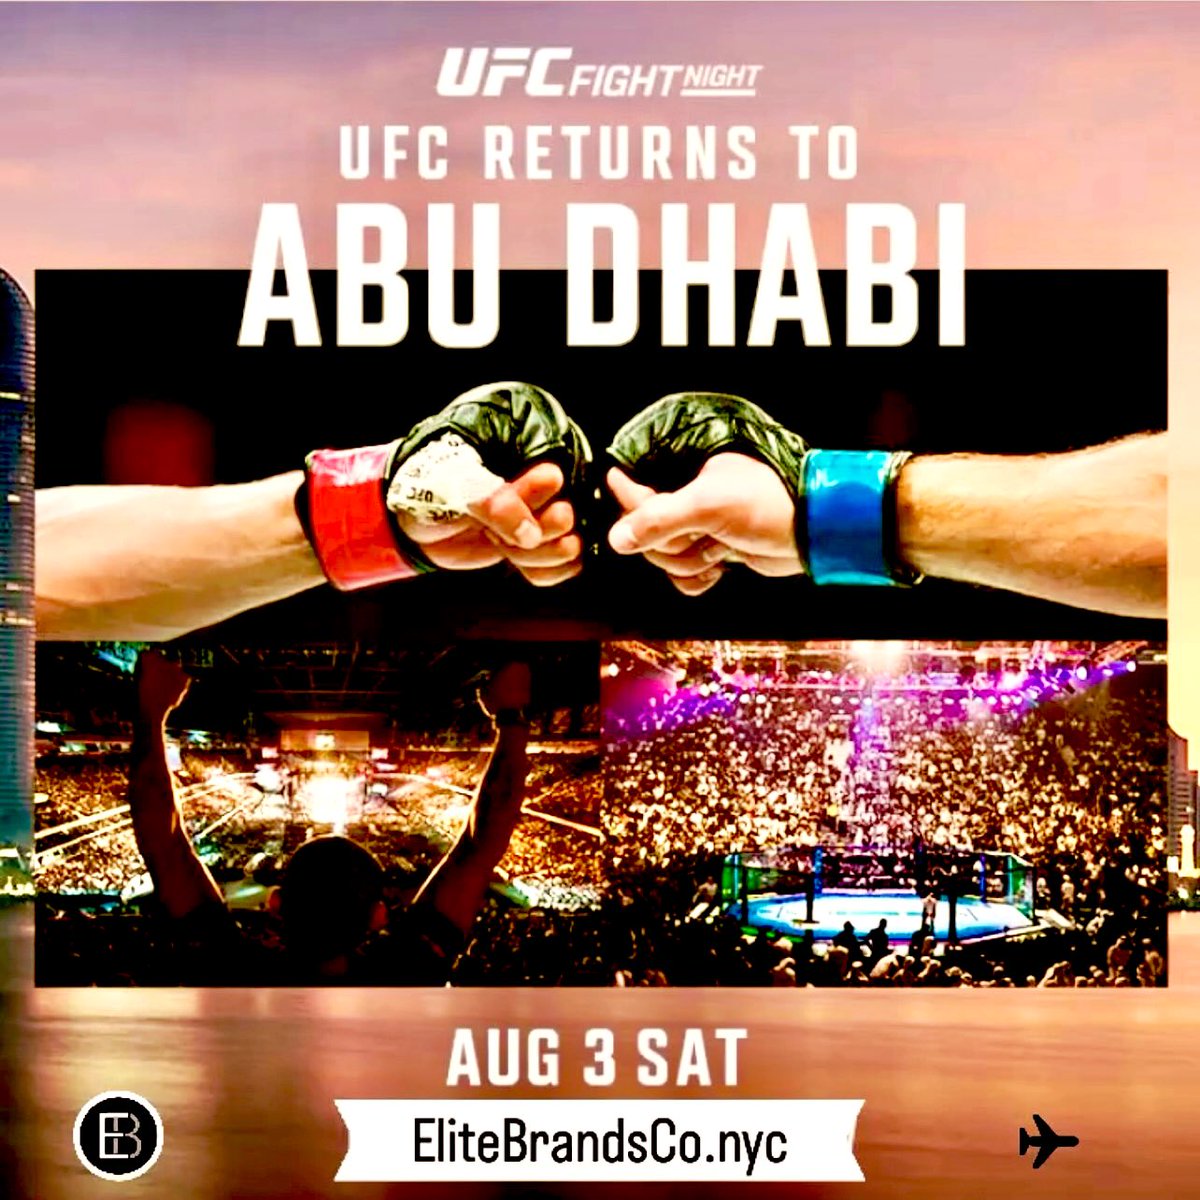 The Ultimate UFC Experience | @VisitAbuDhabi Fly Private to Abu Dhabi for UFC Fight Night via #EliteBrandsCo 👀 #UFC #UFCAbuDhabi #InAbuDhabi  #UFCFightNight #AbuDhabi #FlyPrivate #MMA #FightNight #LovinAbuDhabi #LuxuryLifestyle #ExclusiveEvents #BespokeTravel #TravelSolutions